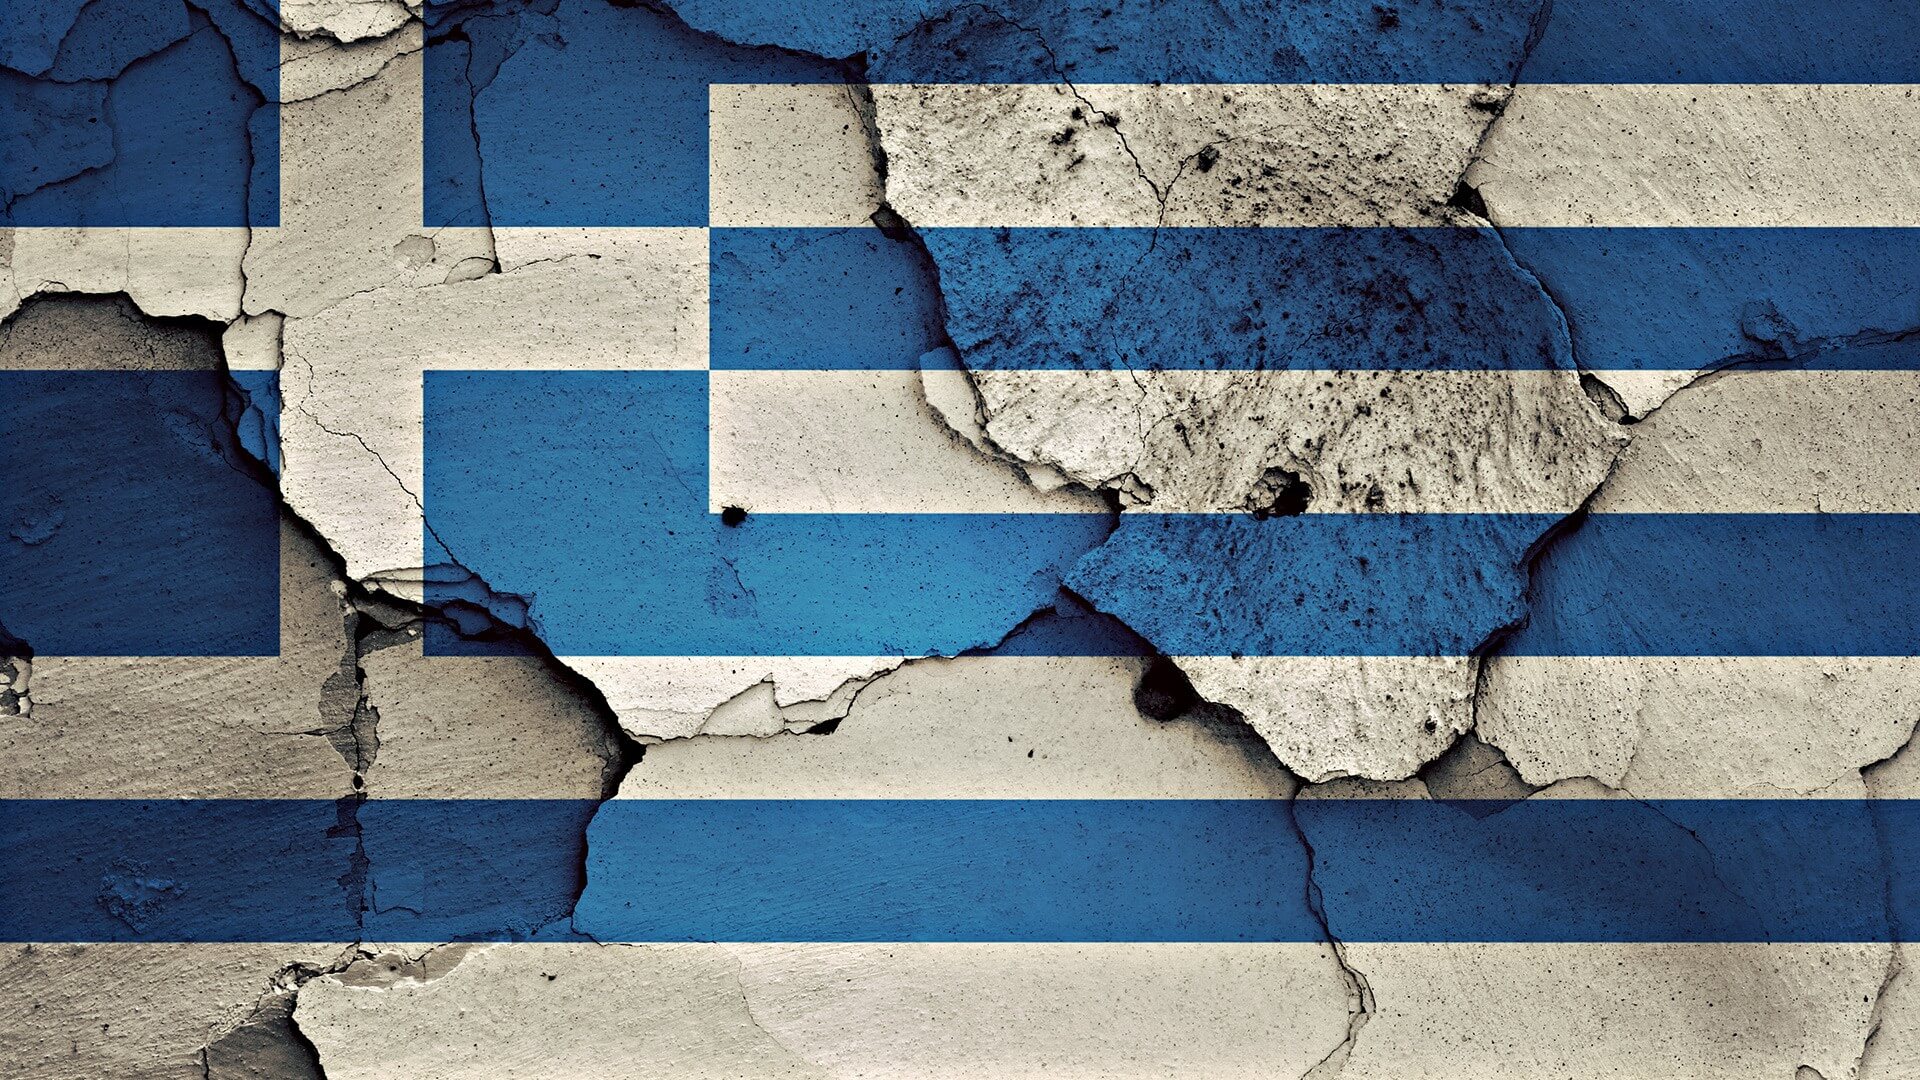 Ondernemer in Griekenland: "Dit land gaat naar de klote"